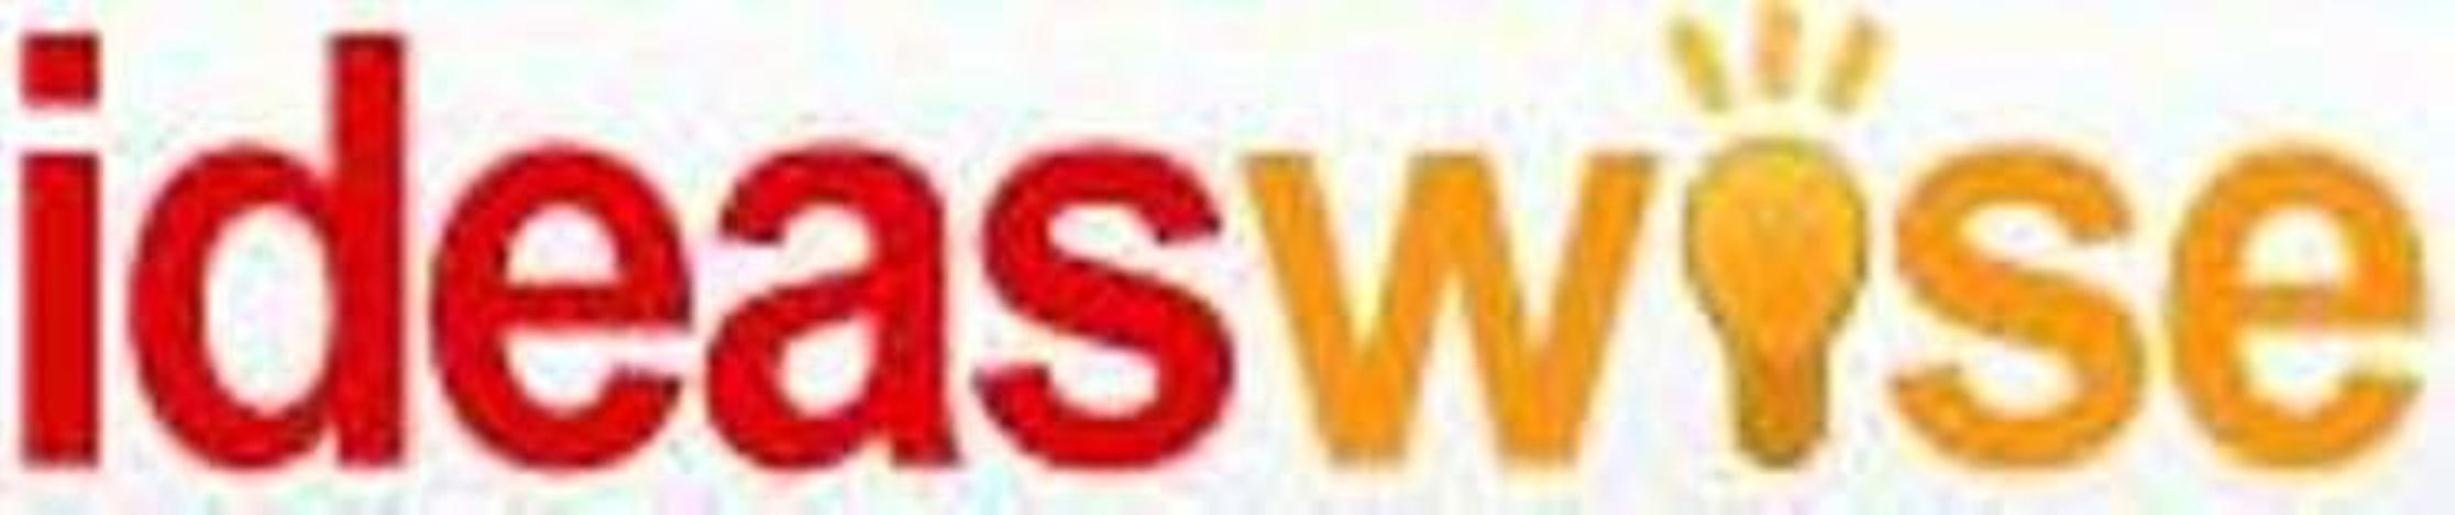 Ideaswise logo